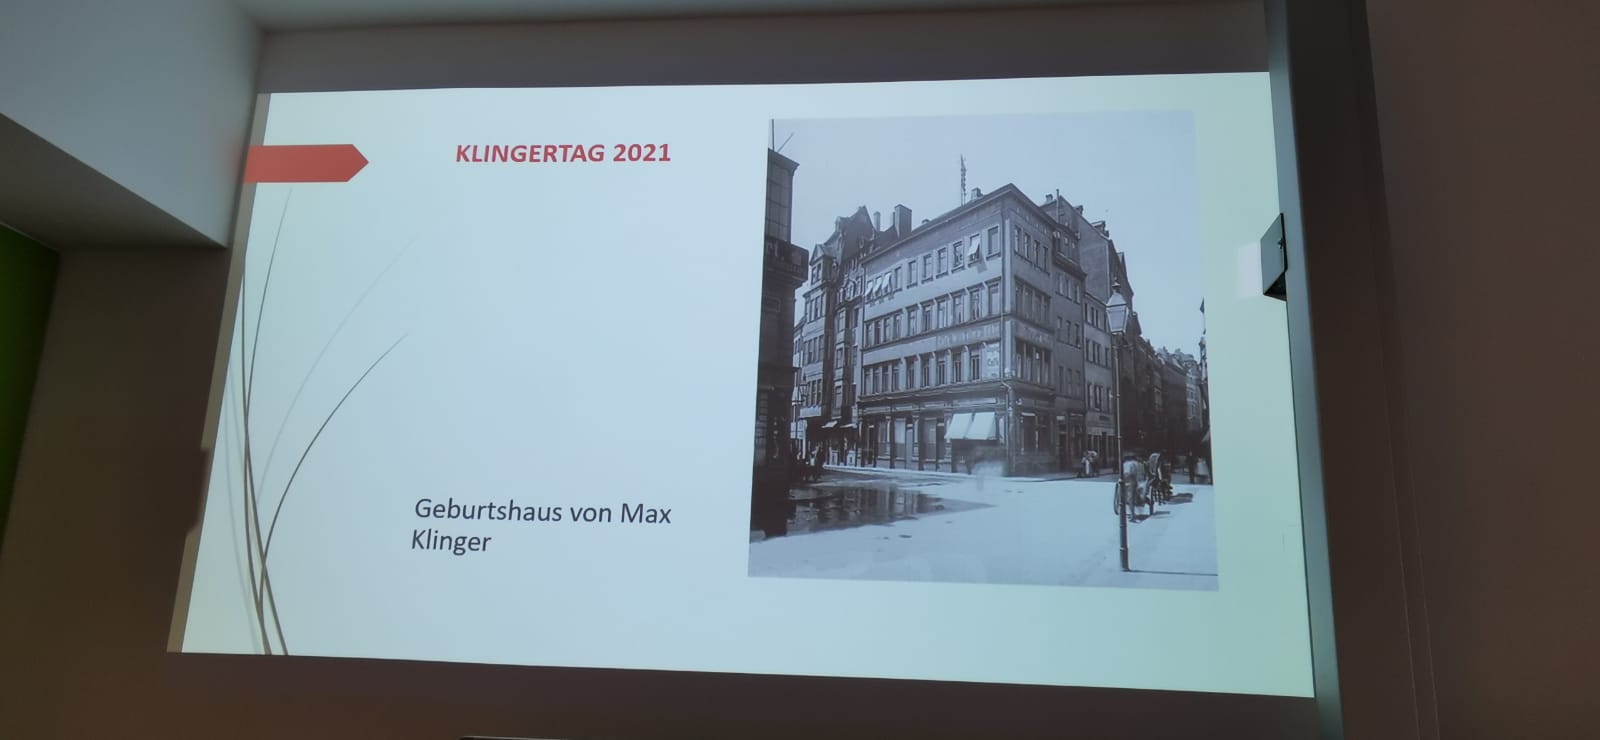 Klingertag 2021